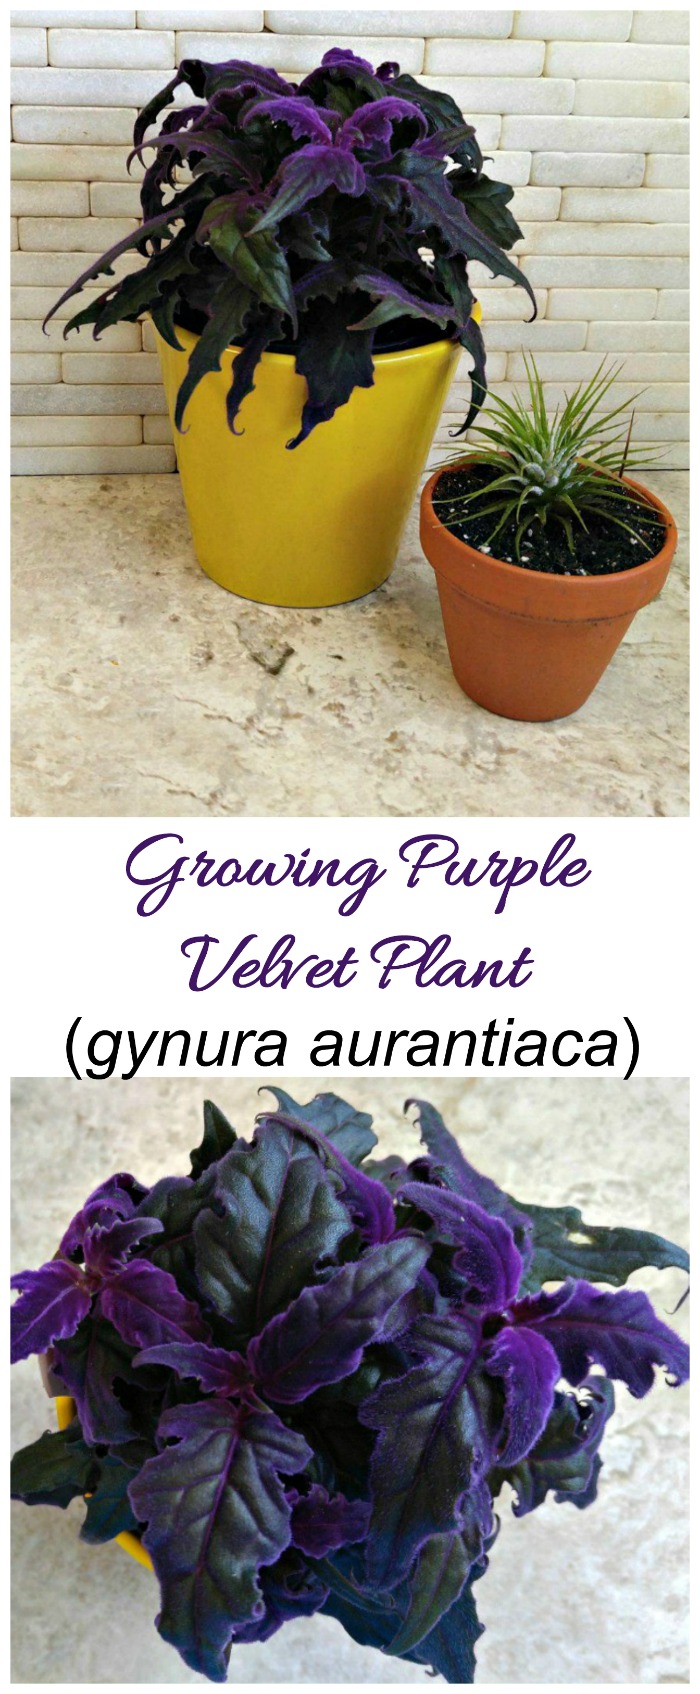 მეწამული ვნების მცენარე (Gynura Aurantiaca) - მეწამული ხავერდის მცენარეების გაზრდა